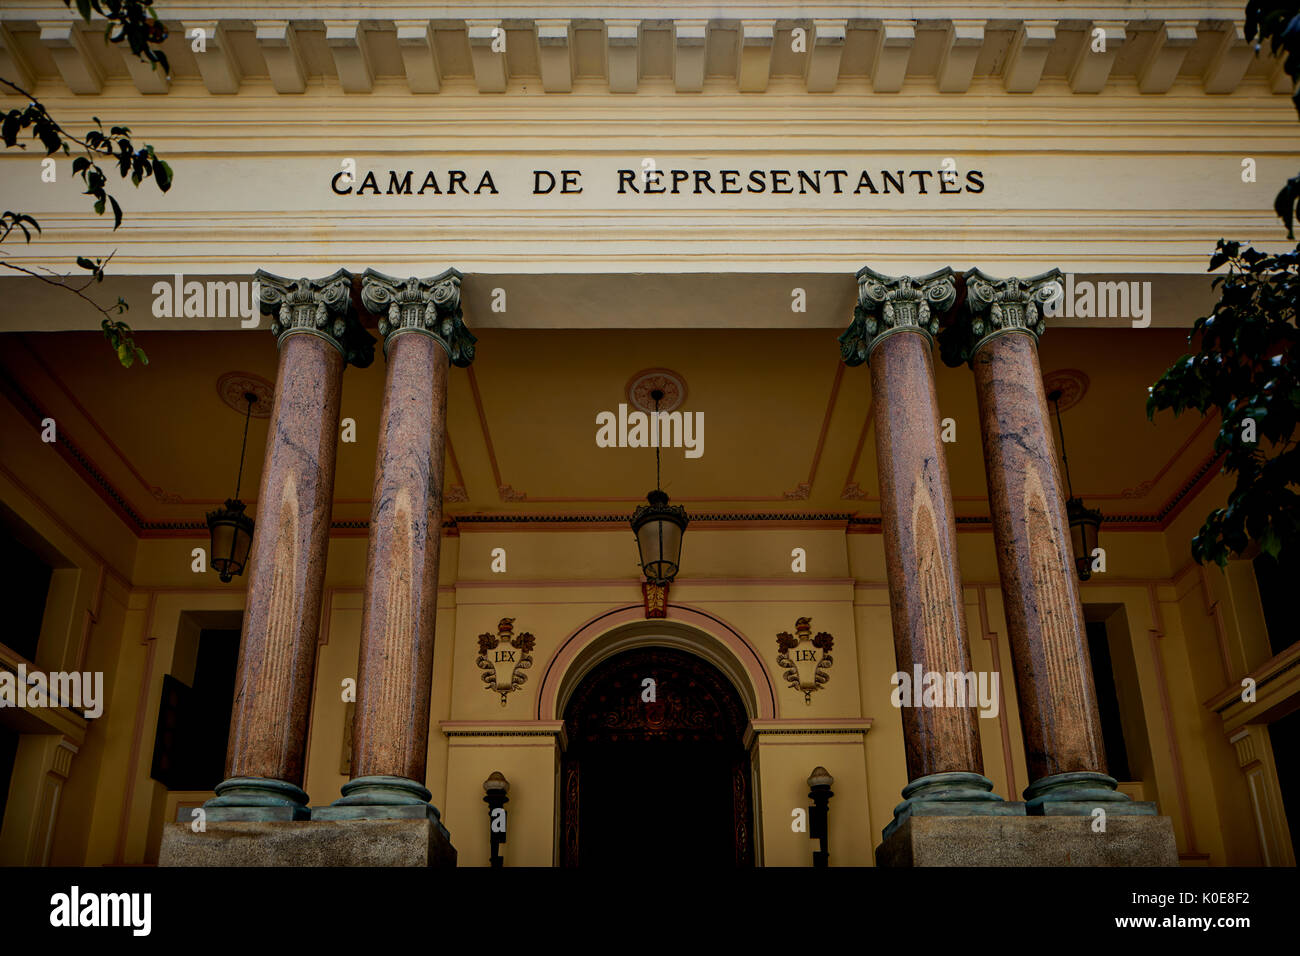 CAMARA DE REPRESENTANTES (HOUSE OF REPRESENTATIVES), CALLE DE LOS OFICIOS,  capital Havana in Cuba, Stock Photo